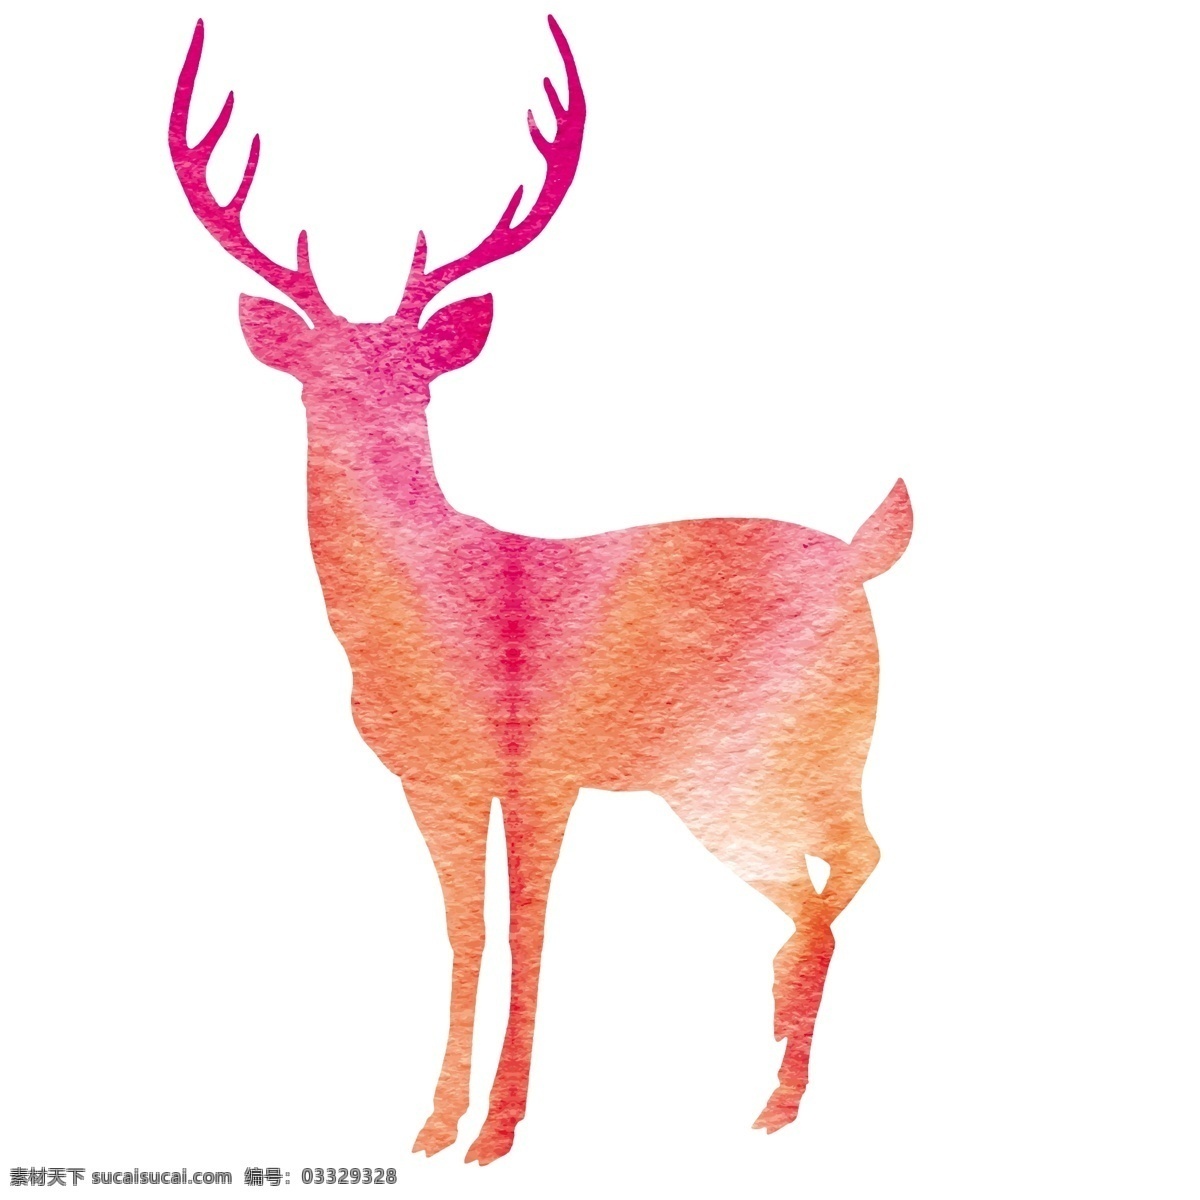 森 系 鹿角 小鹿 手绘 插画 矢量 水彩 日系 图案 卡通 绘画 物品 头像 橡皮章 风格